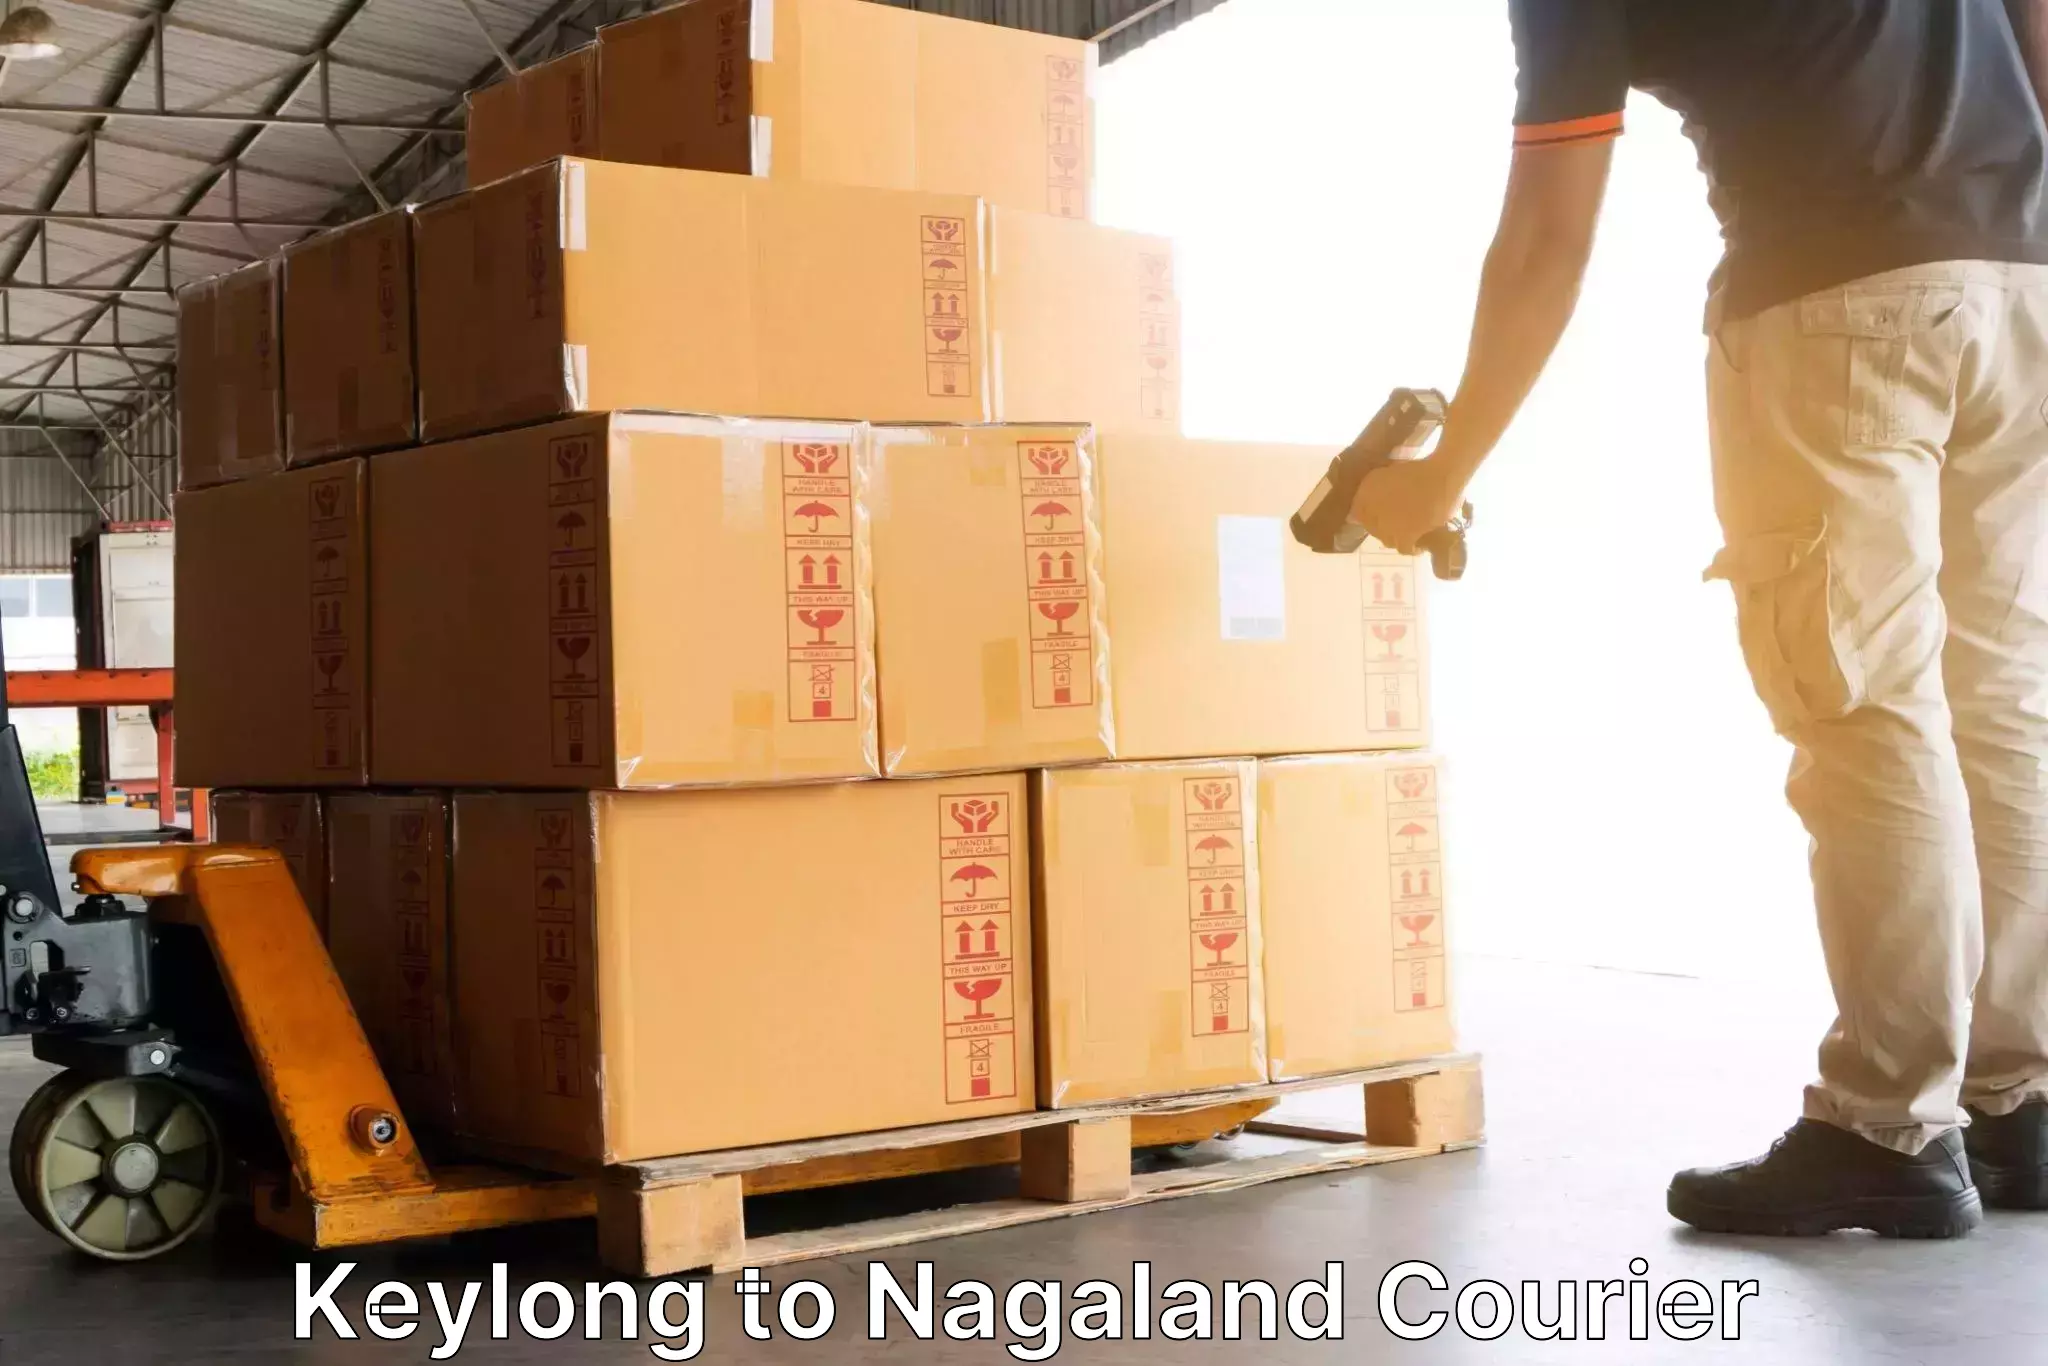 Global shipping networks Keylong to NIT Nagaland